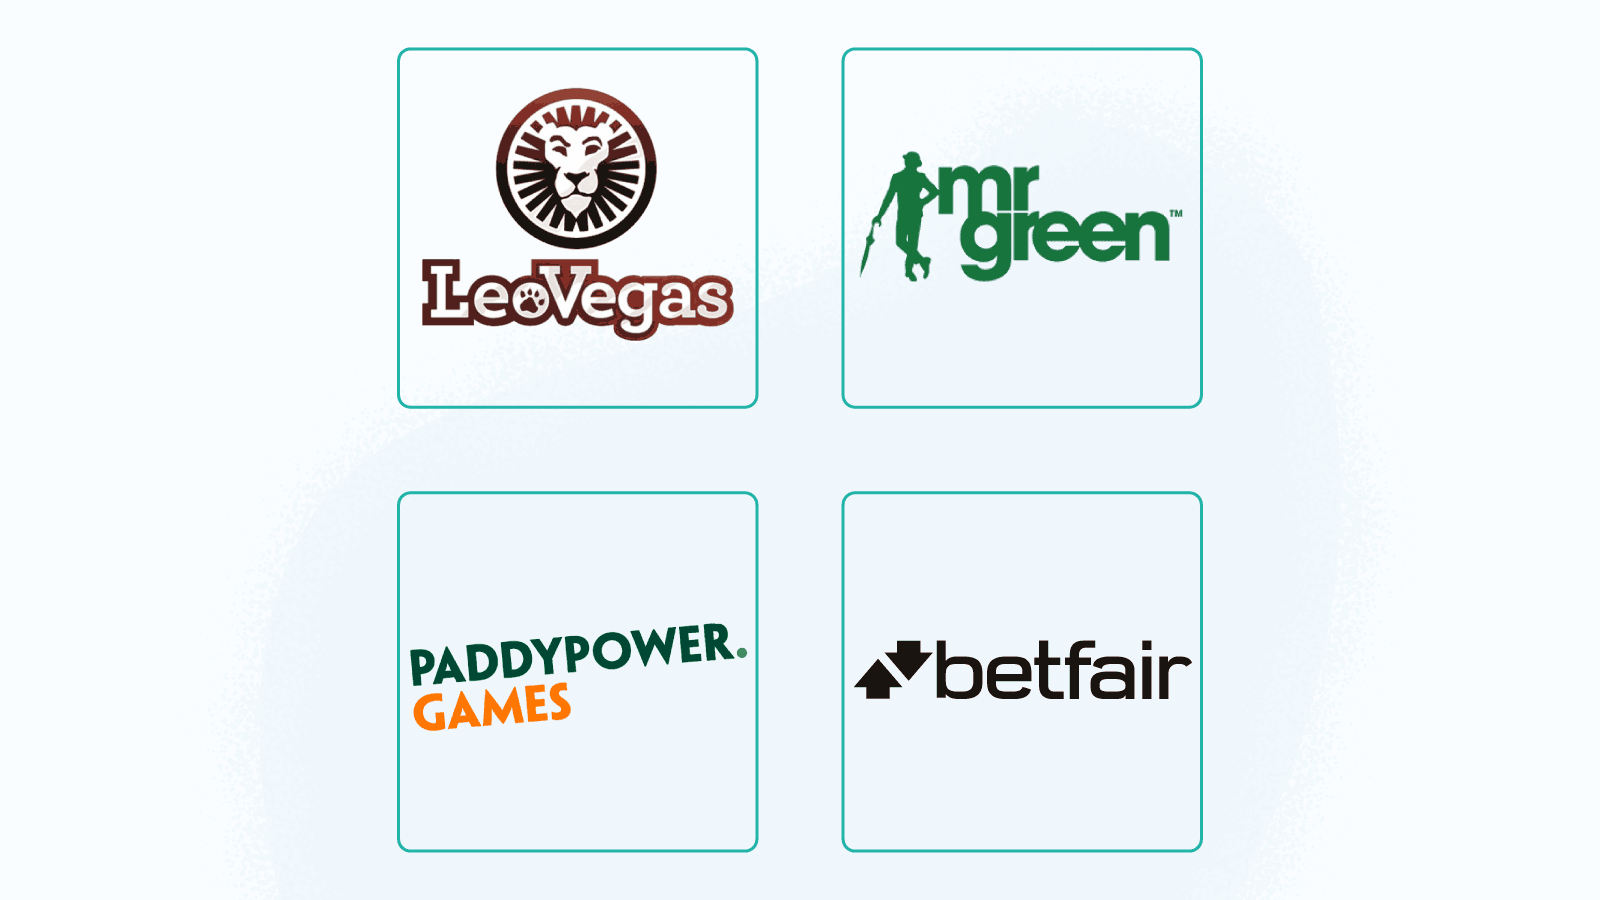 Best ranked casino apps in Ireland